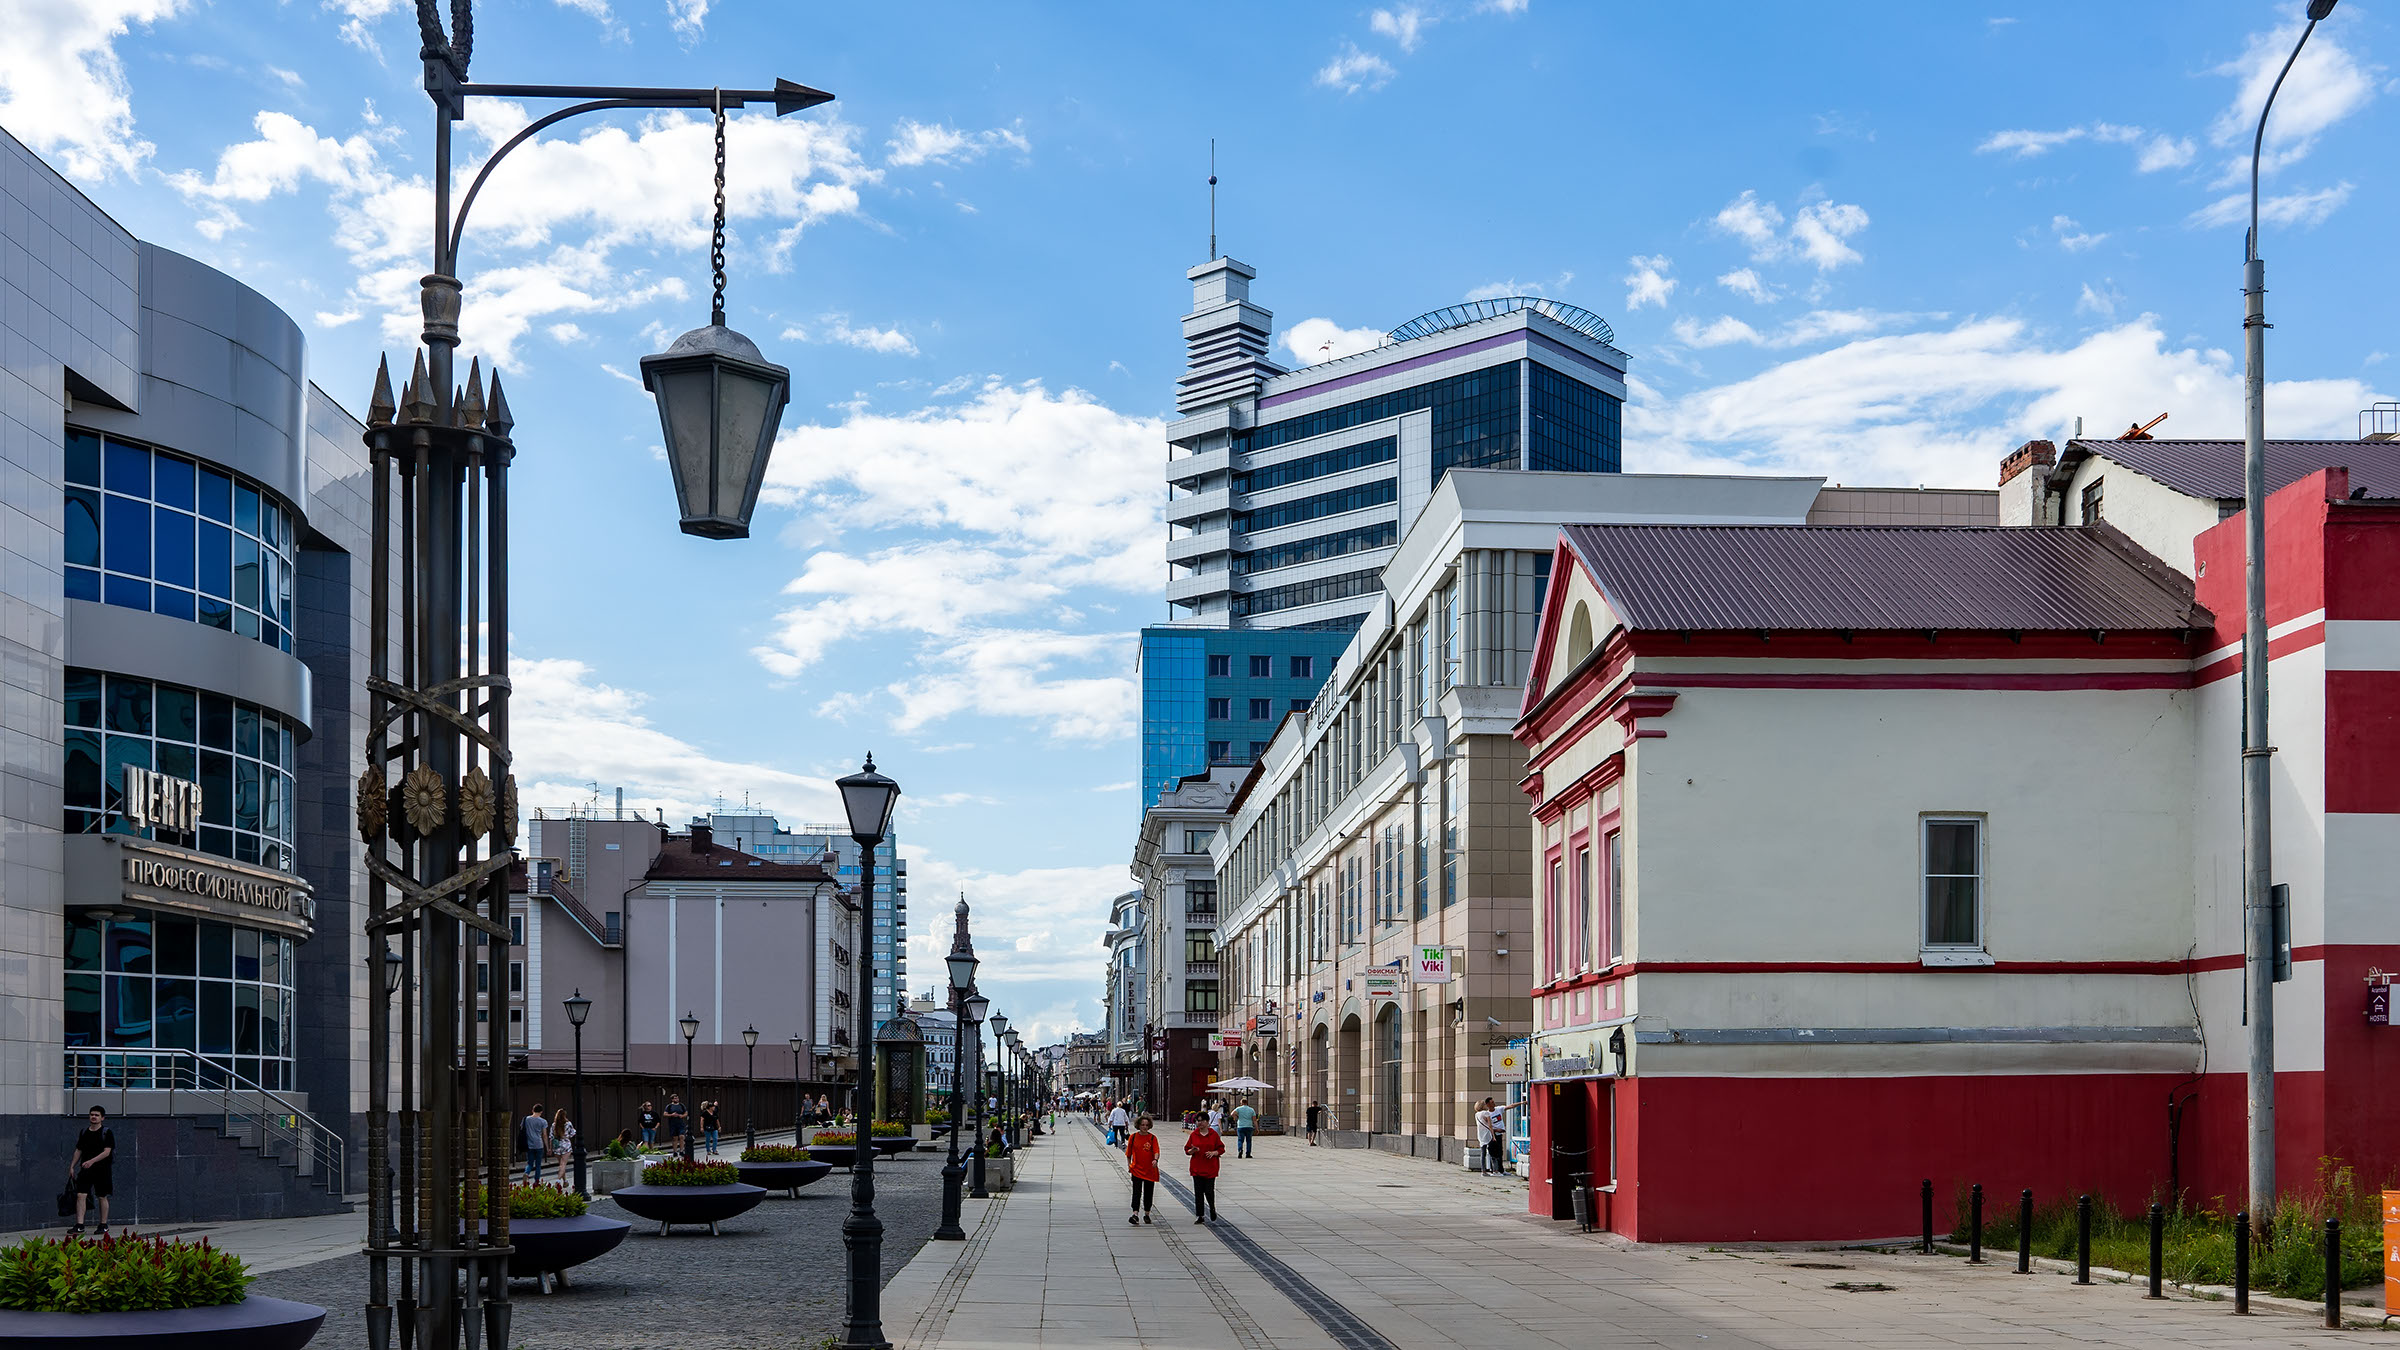 Улица Петербургская, Казань::Казань, ул. Петербургская, июль 2020